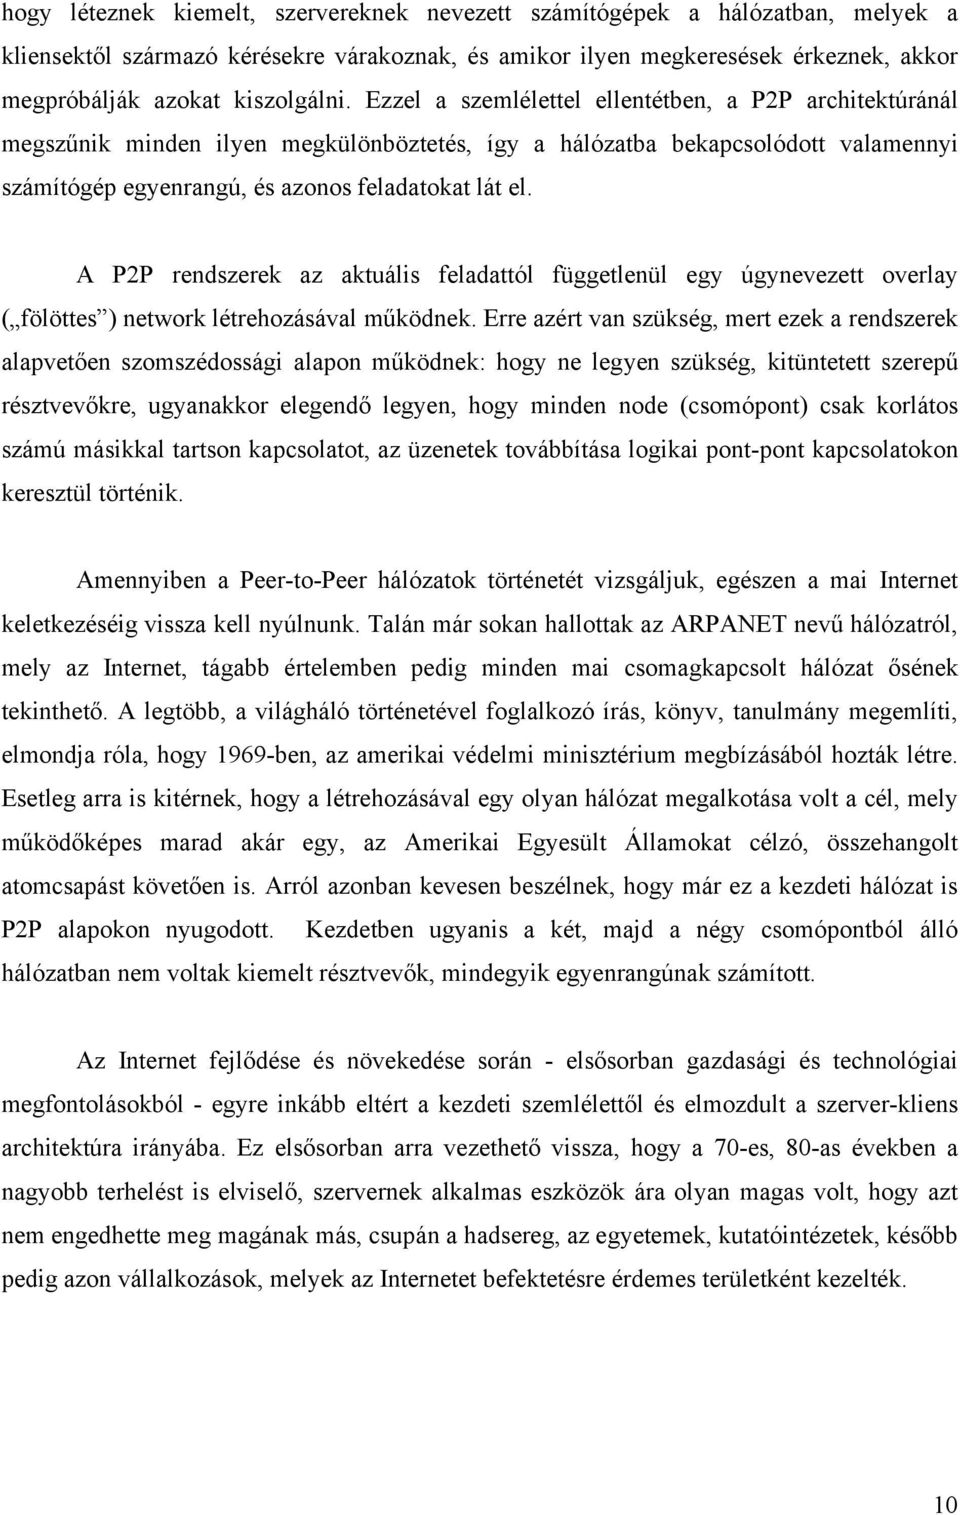 Szakdolgozat. Torony Csaba - PDF Free Download